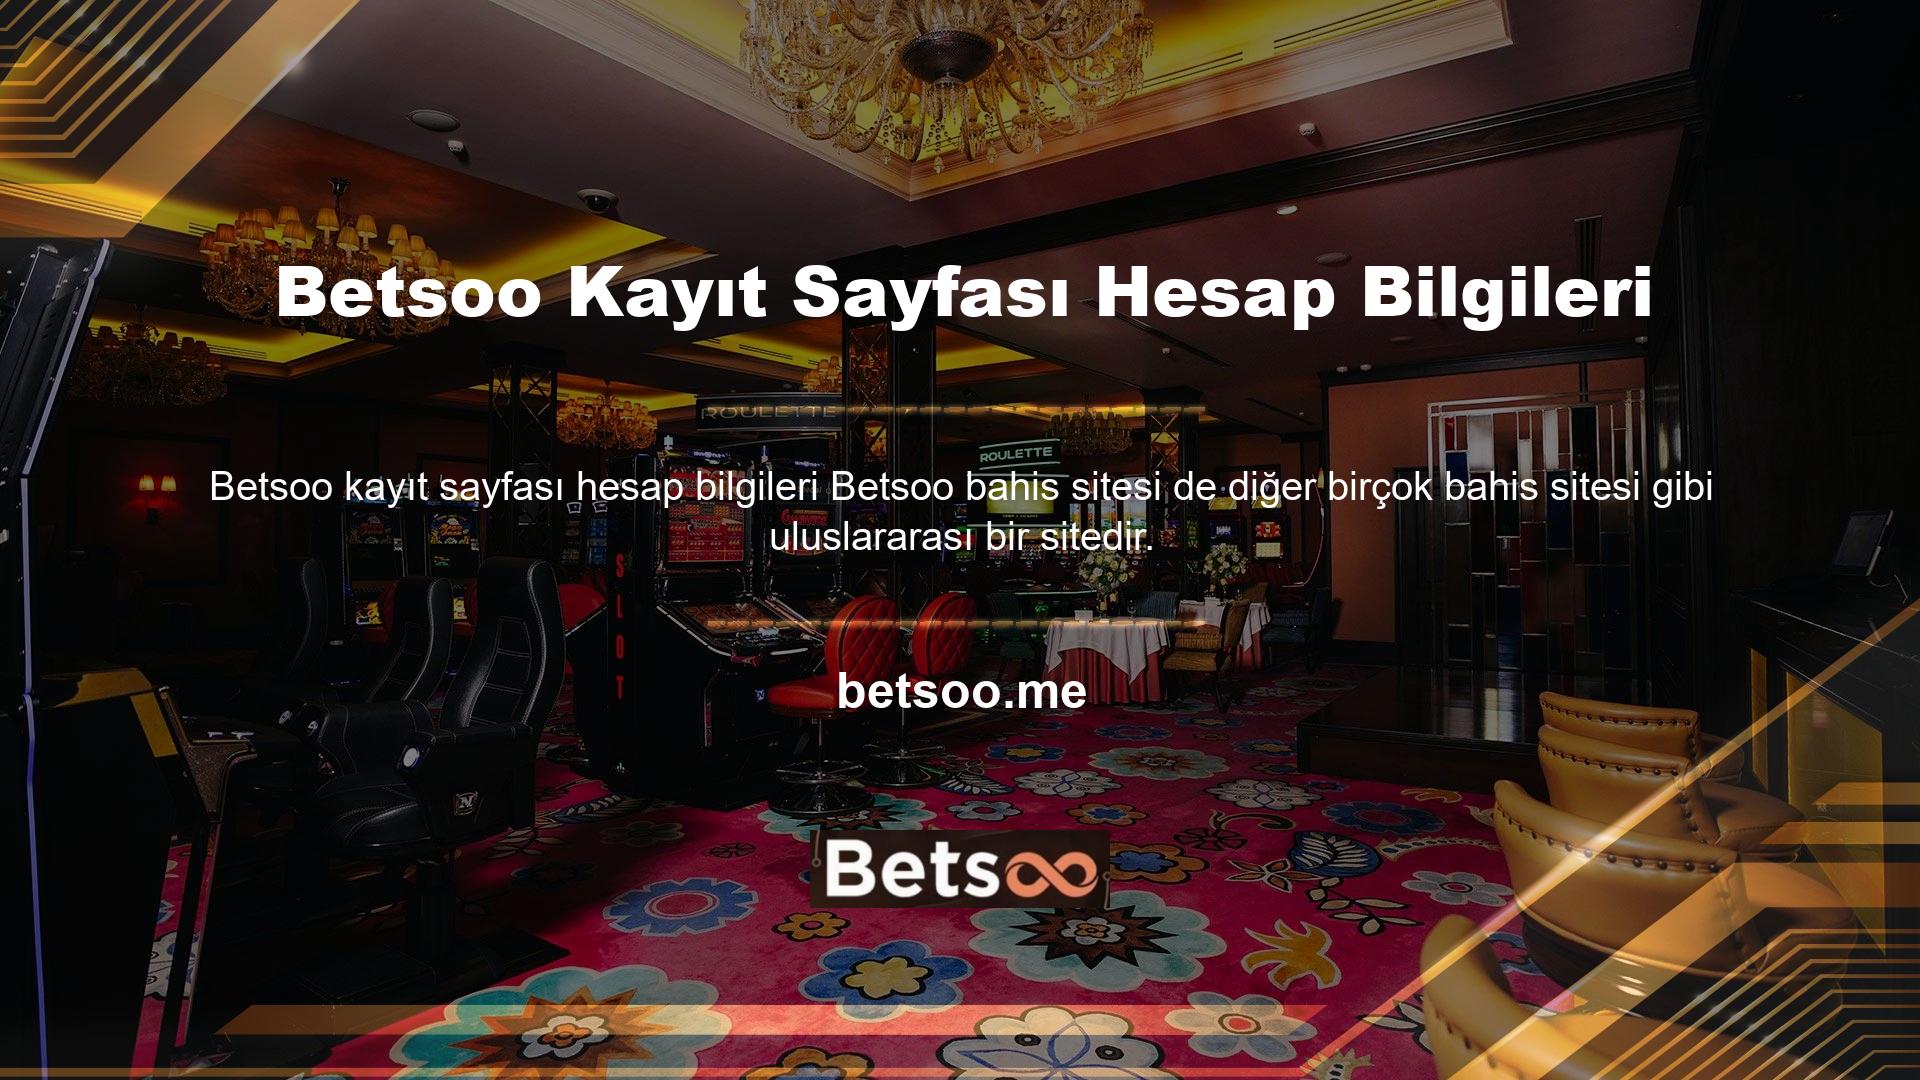 Ülkemiz Bilgi Teknolojileri Etkileşim Kurumu'nun (BTK) yabancı casino sitelerine erişim kısıtlamaları, Betsoo kayıt sayfasındaki hesap bilgileri de dahil olmak üzere casino sitelerini de etkilemektedir